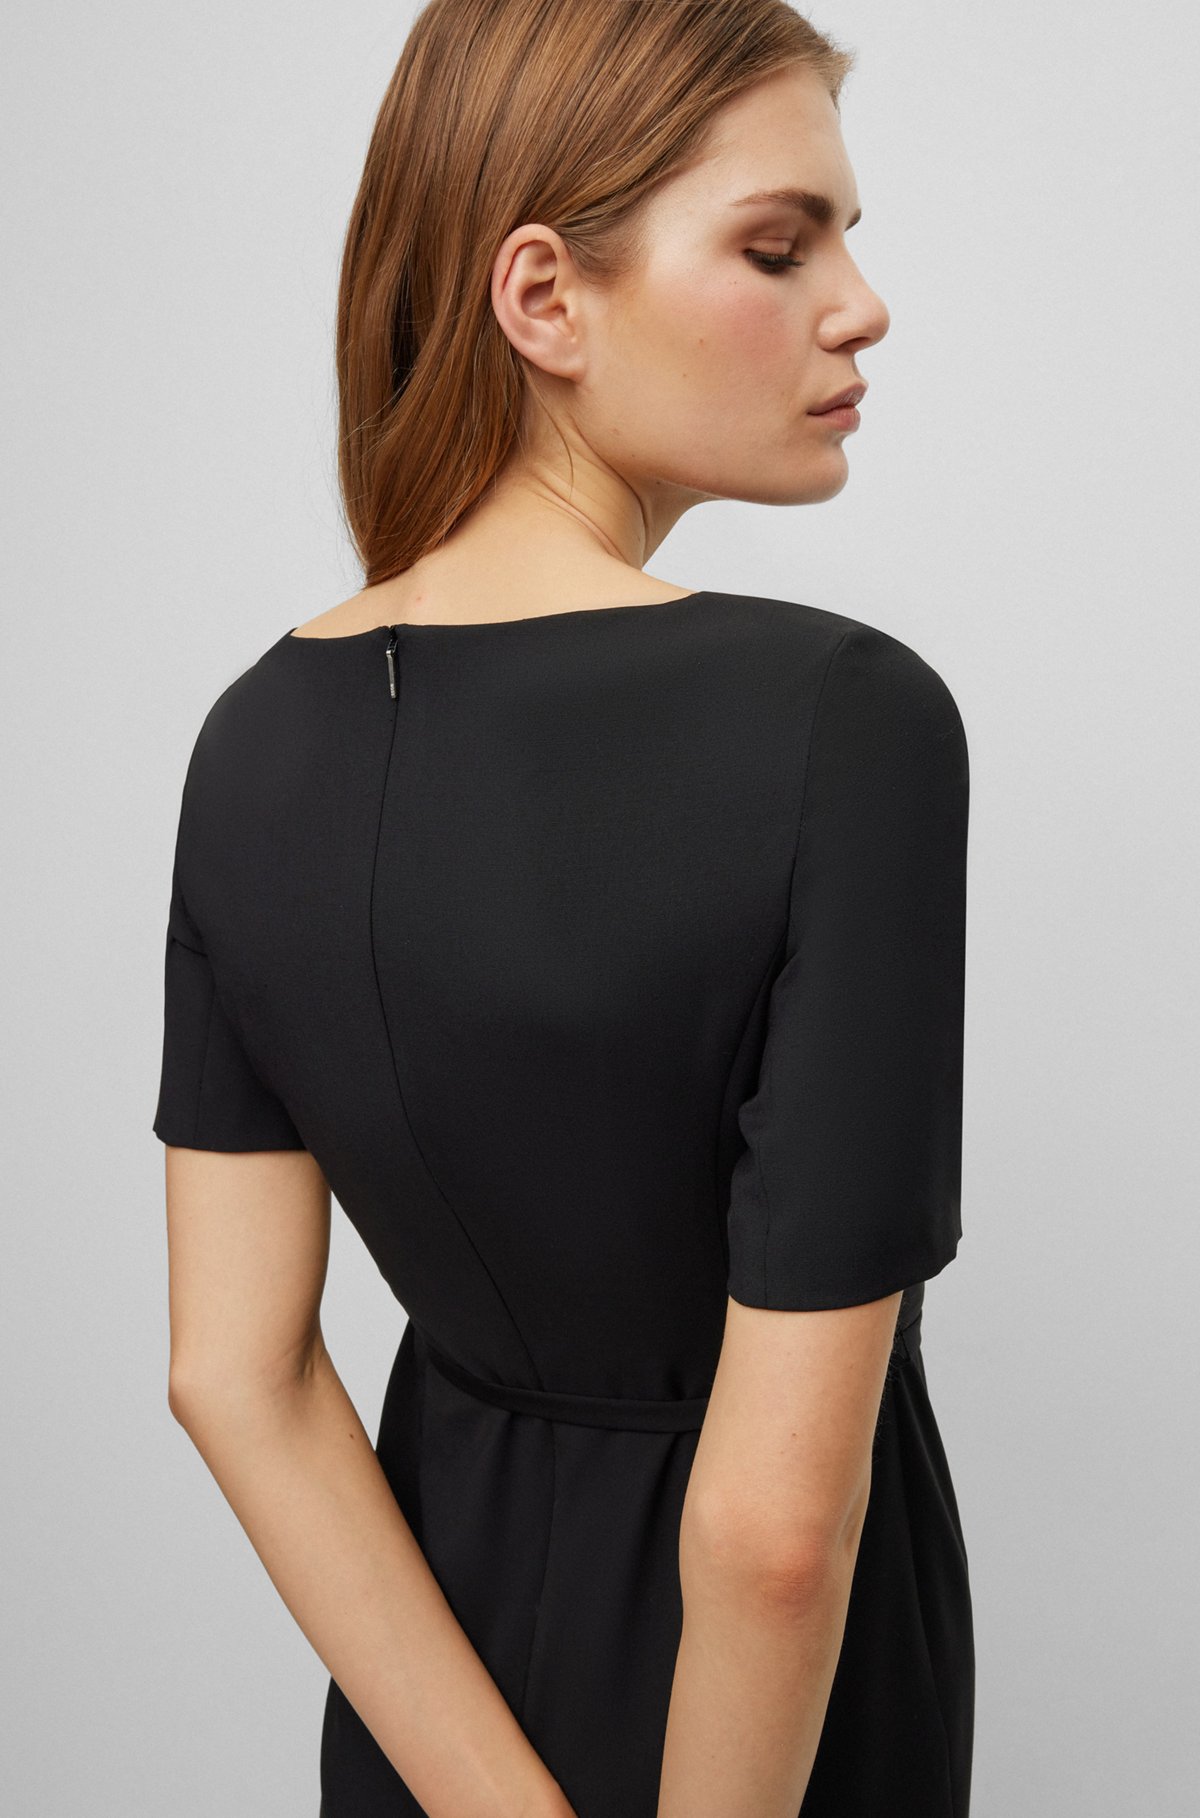 Virgin-wool slim-fit dress with belt detail, Black